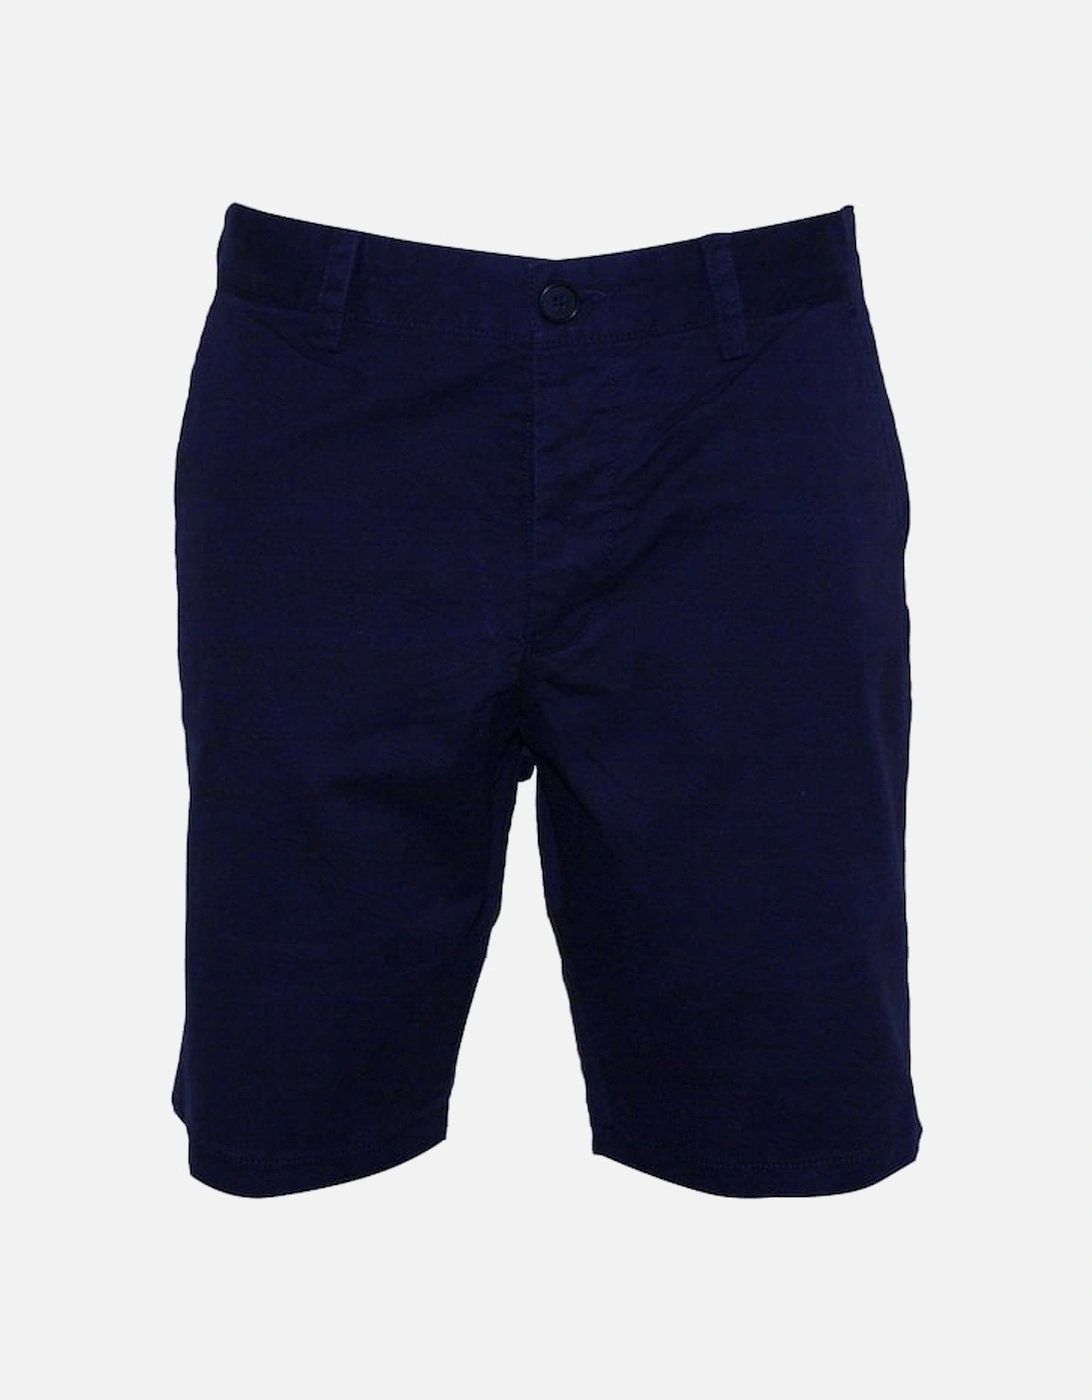 Classic Chino Shorts, Navy, 4 of 3